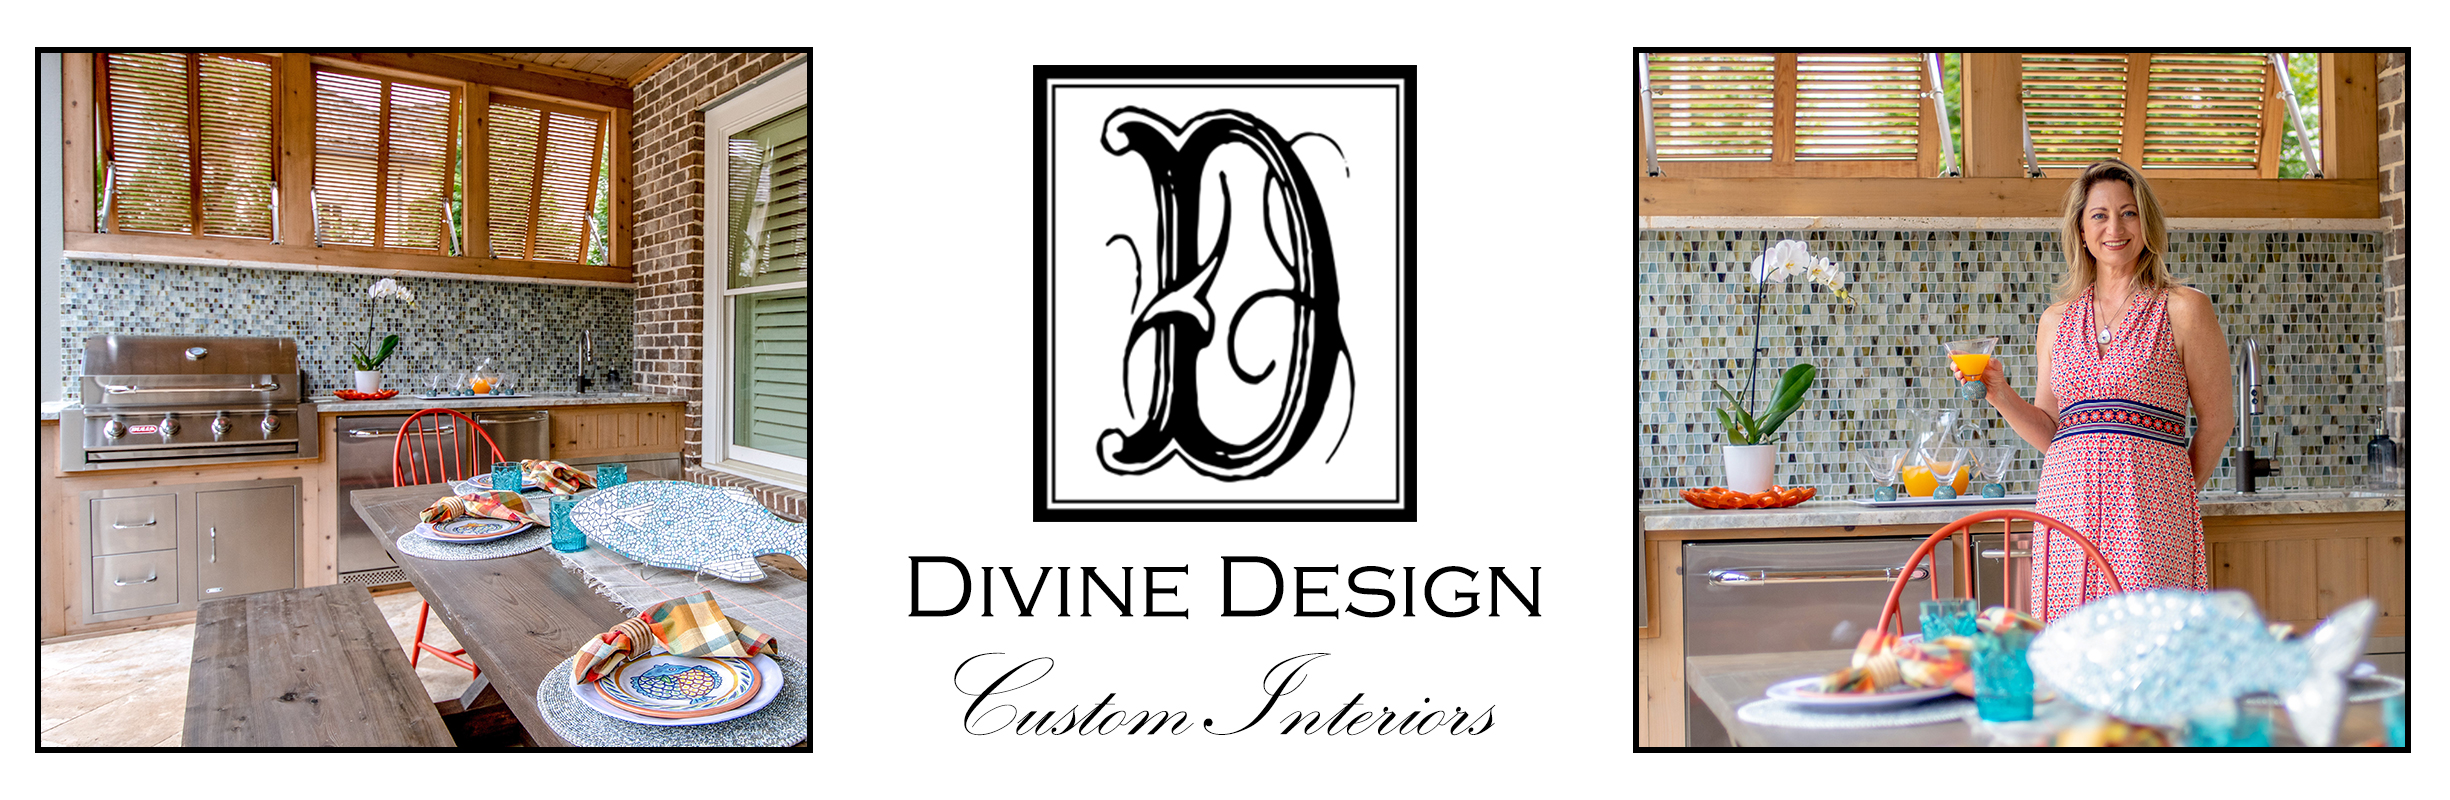 Divine Design Dare To Dream Your Divine Design